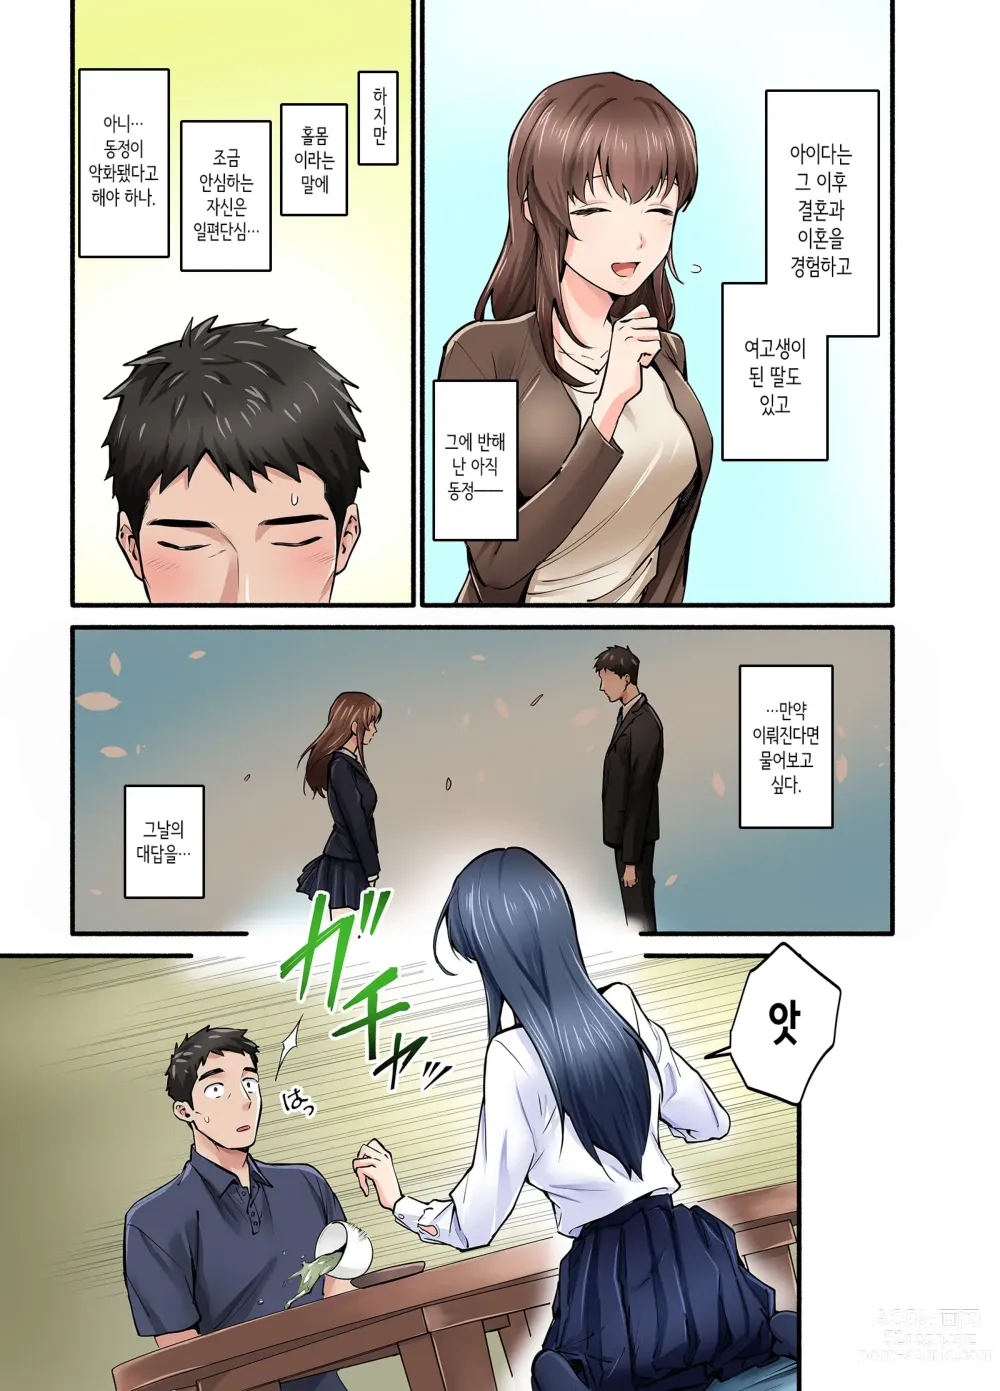 Page 8 of doujinshi 첫사랑의 딸 코믹판 1화